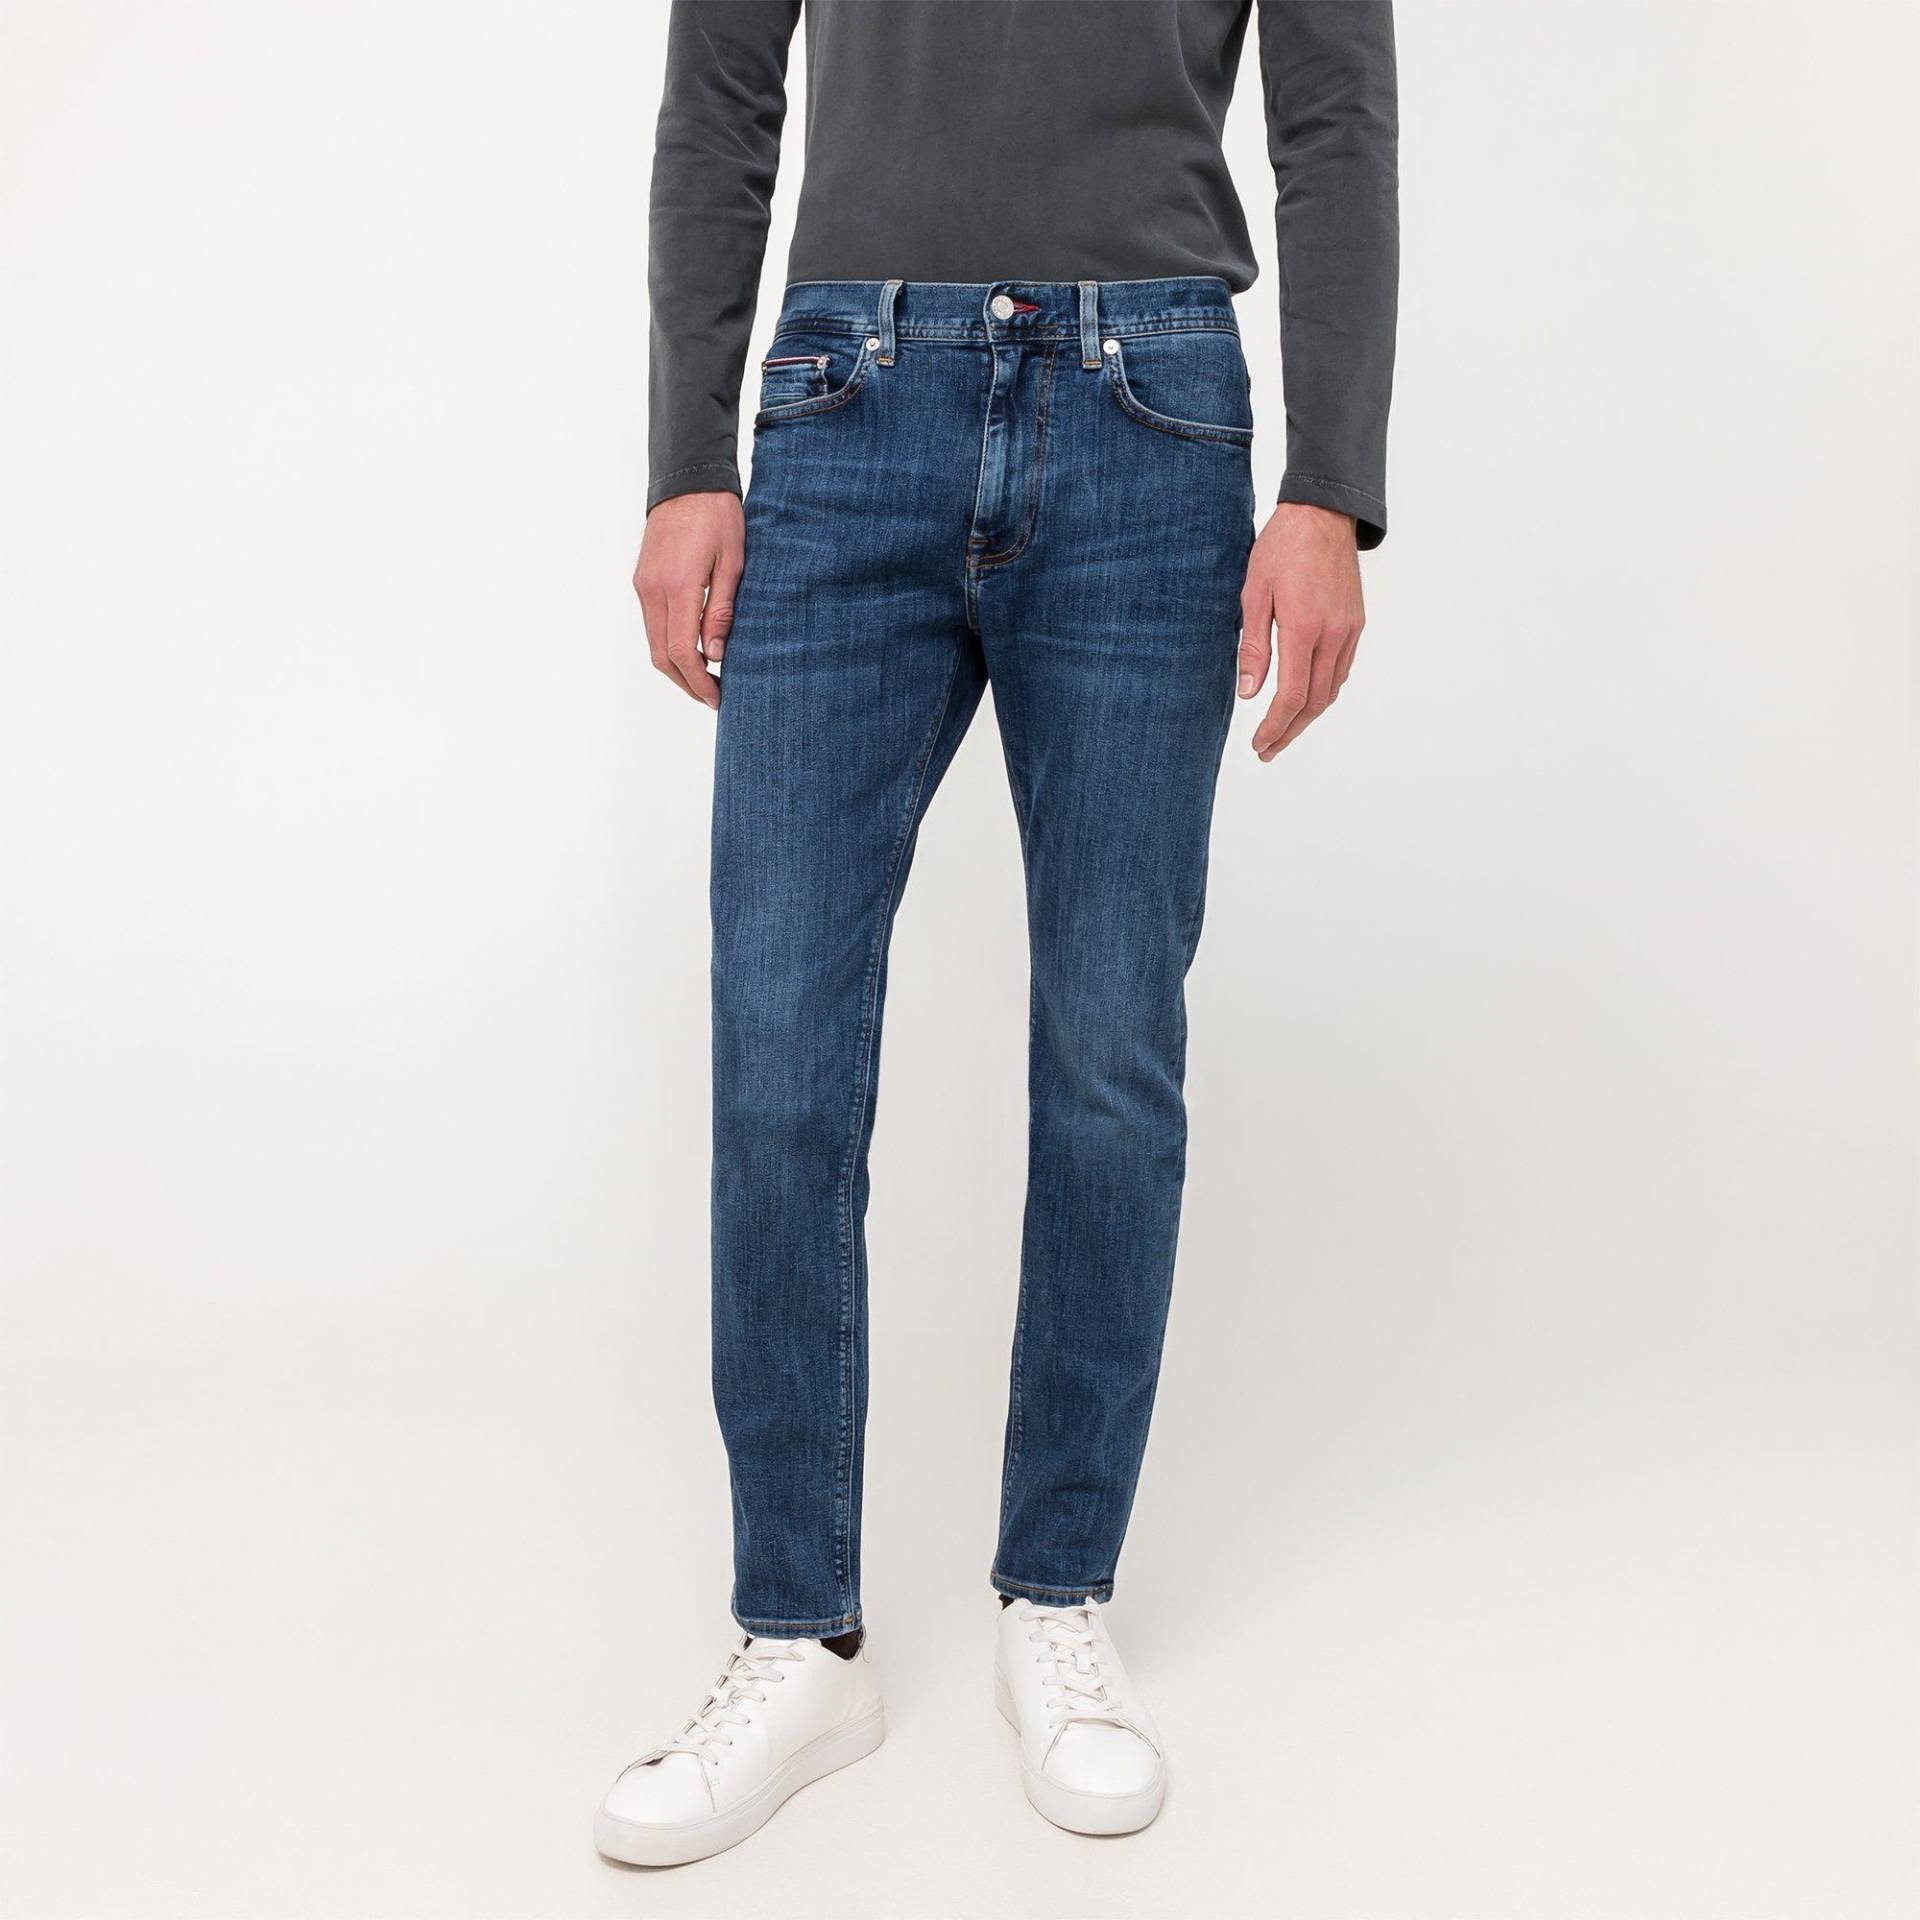 Jeans, Slim Fit Herren Blau  L30/W33 von TOMMY HILFIGER